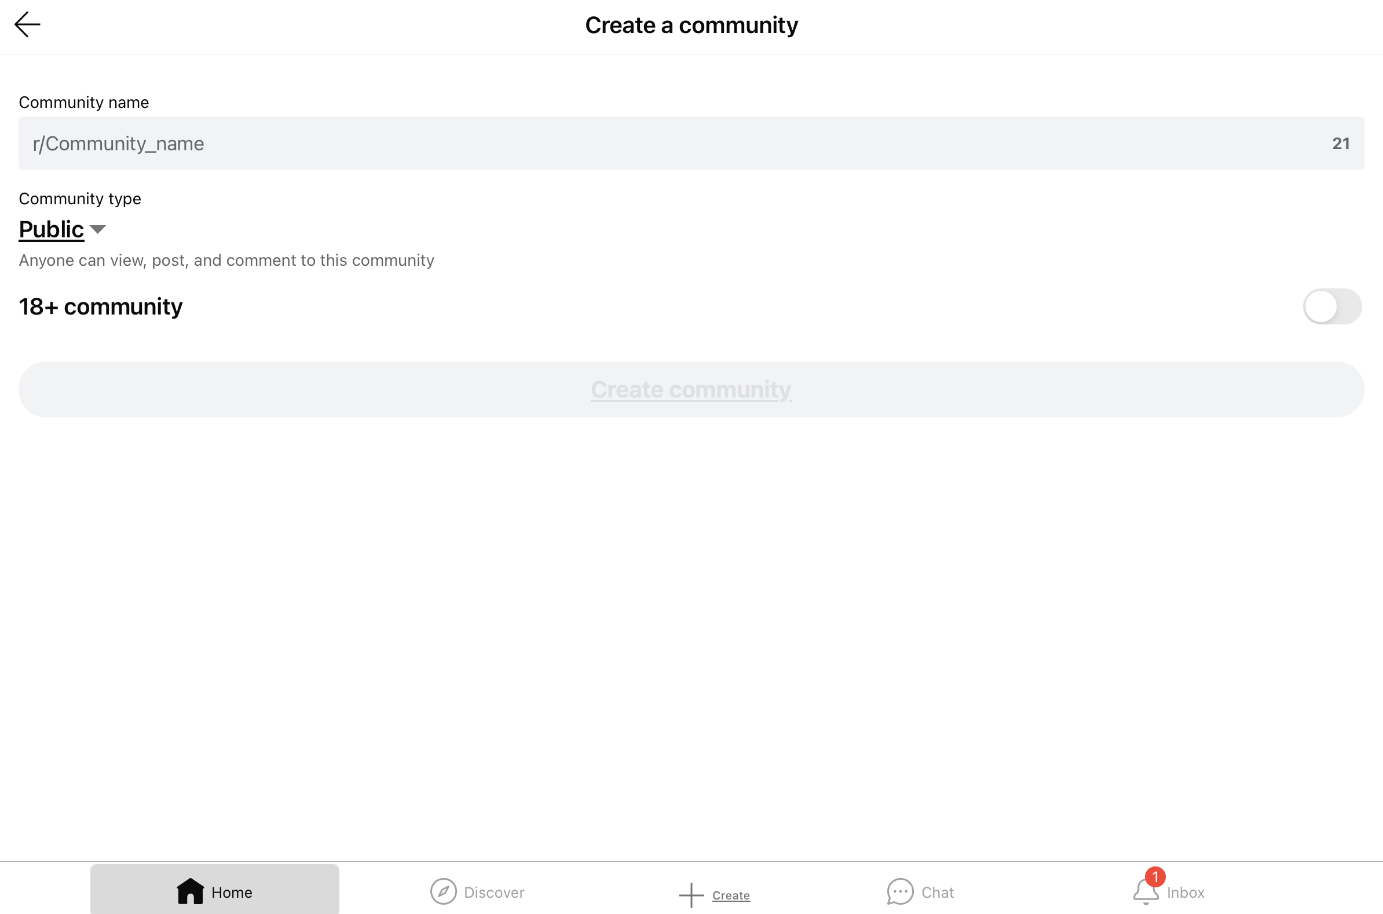 Captura de pantalla de iPad de la creación de una comunidad en Reddit